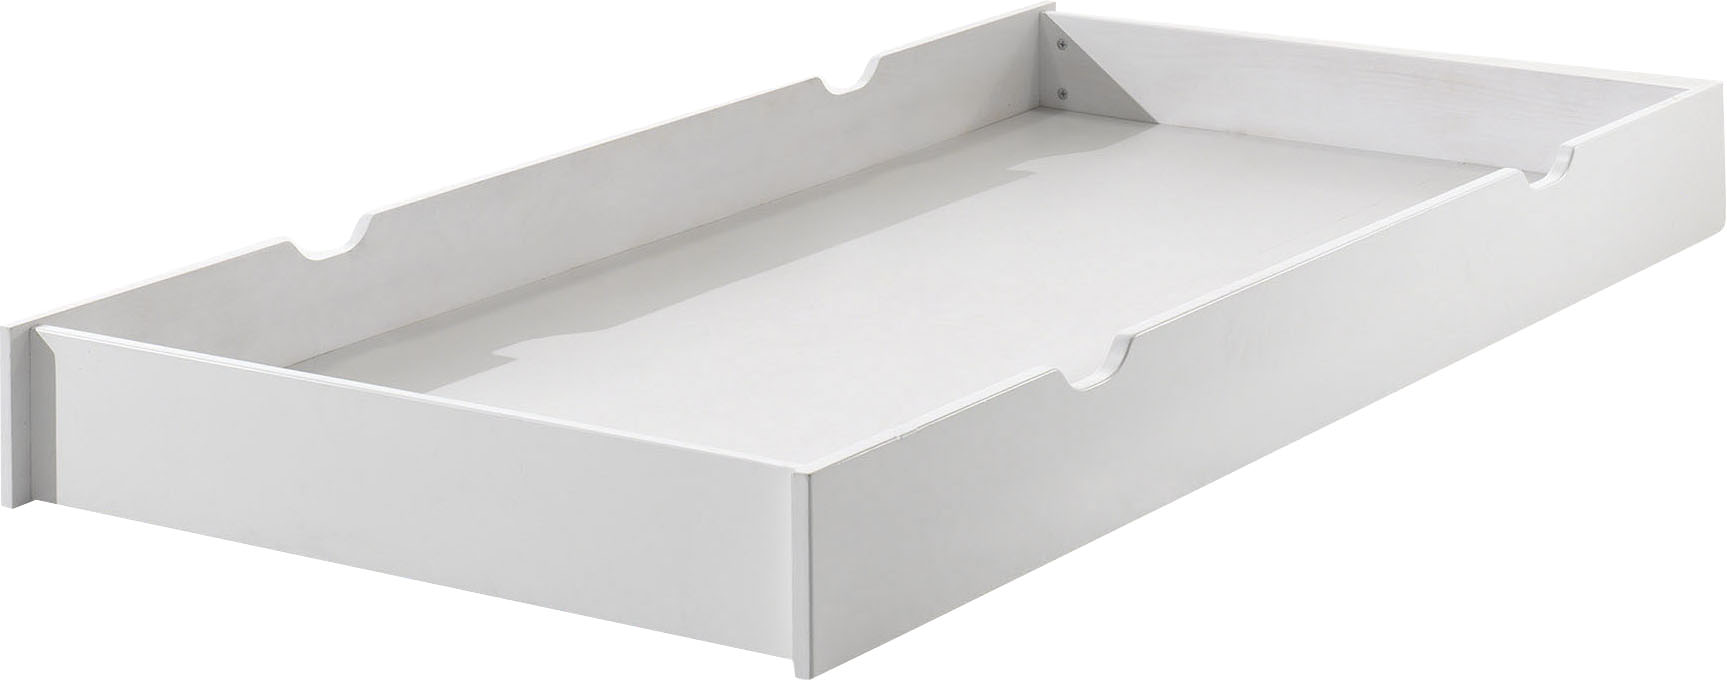 Vipack Bettschubkasten "ERIK", mit Griffmulden, lackierte Oberfläche, leicht zu bedienen durch Rollen